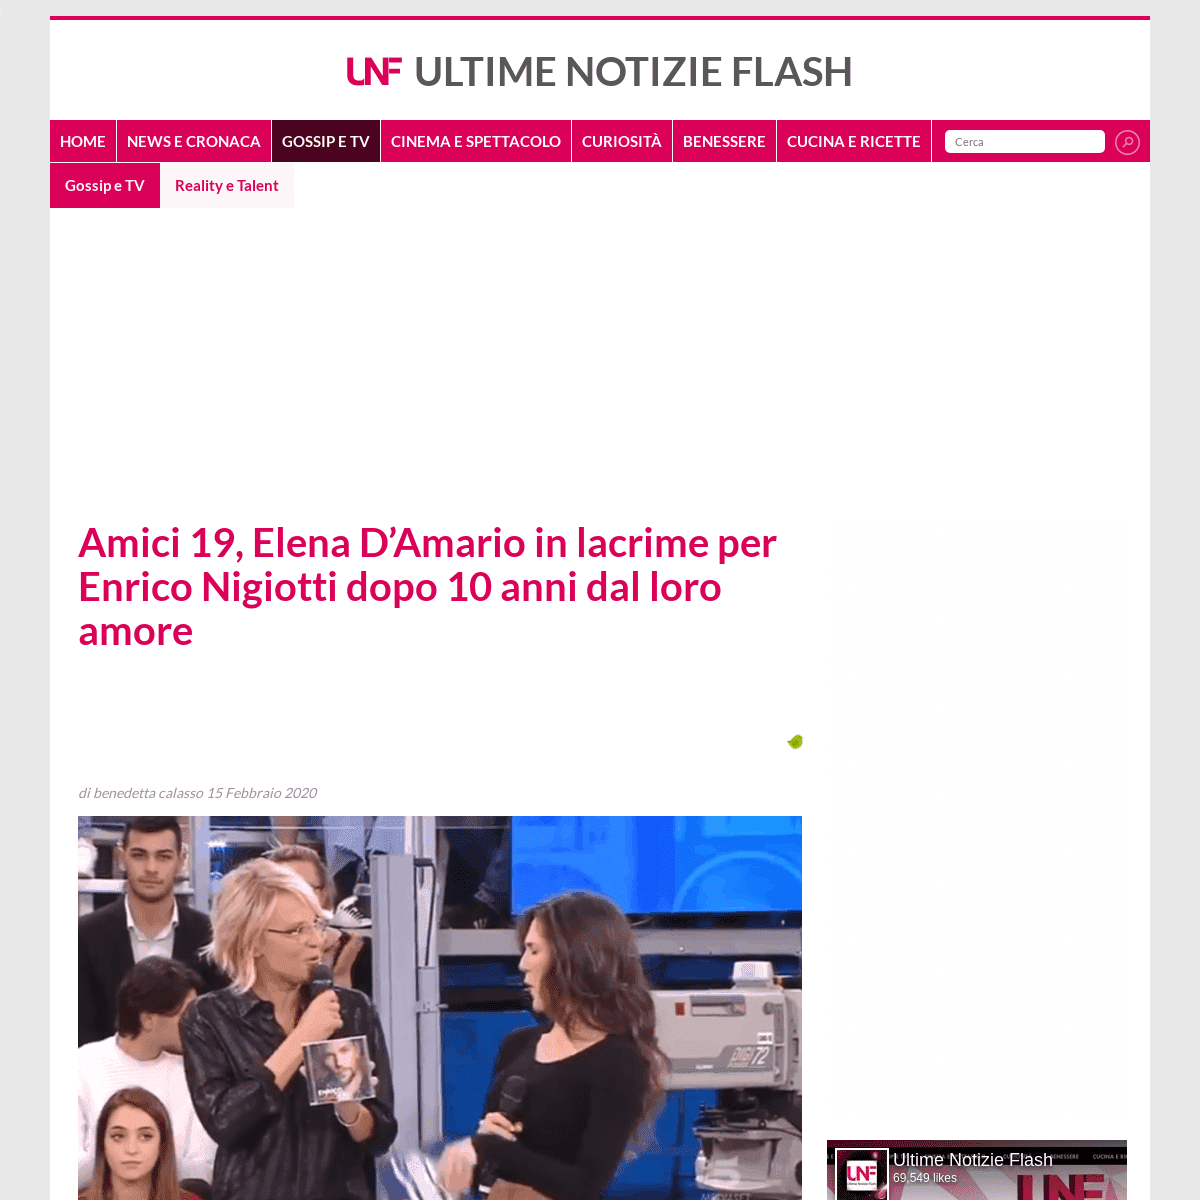 A complete backup of www.ultimenotizieflash.com/gossip-tv/reality-talent/2020/02/15/amici-19-elena-damario-in-lacrime-per-enrico